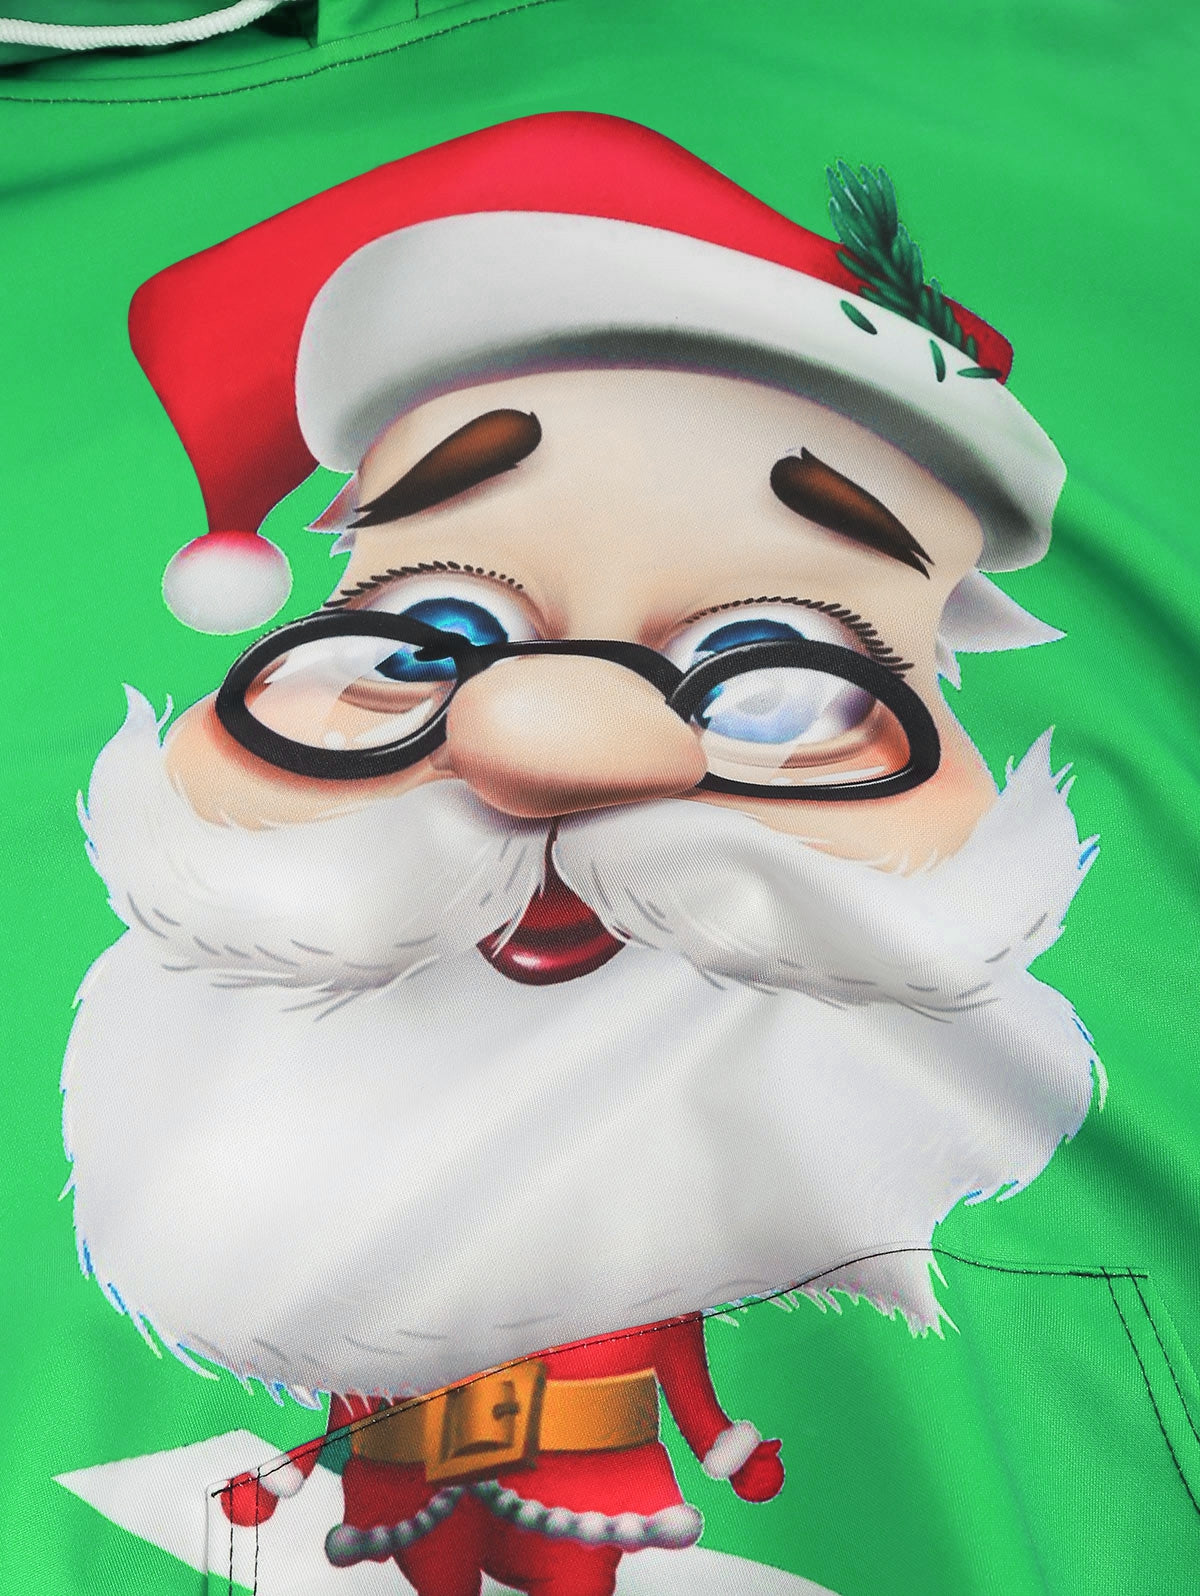 3D Cartoon Santa Claus Printed Pullover Hoodie